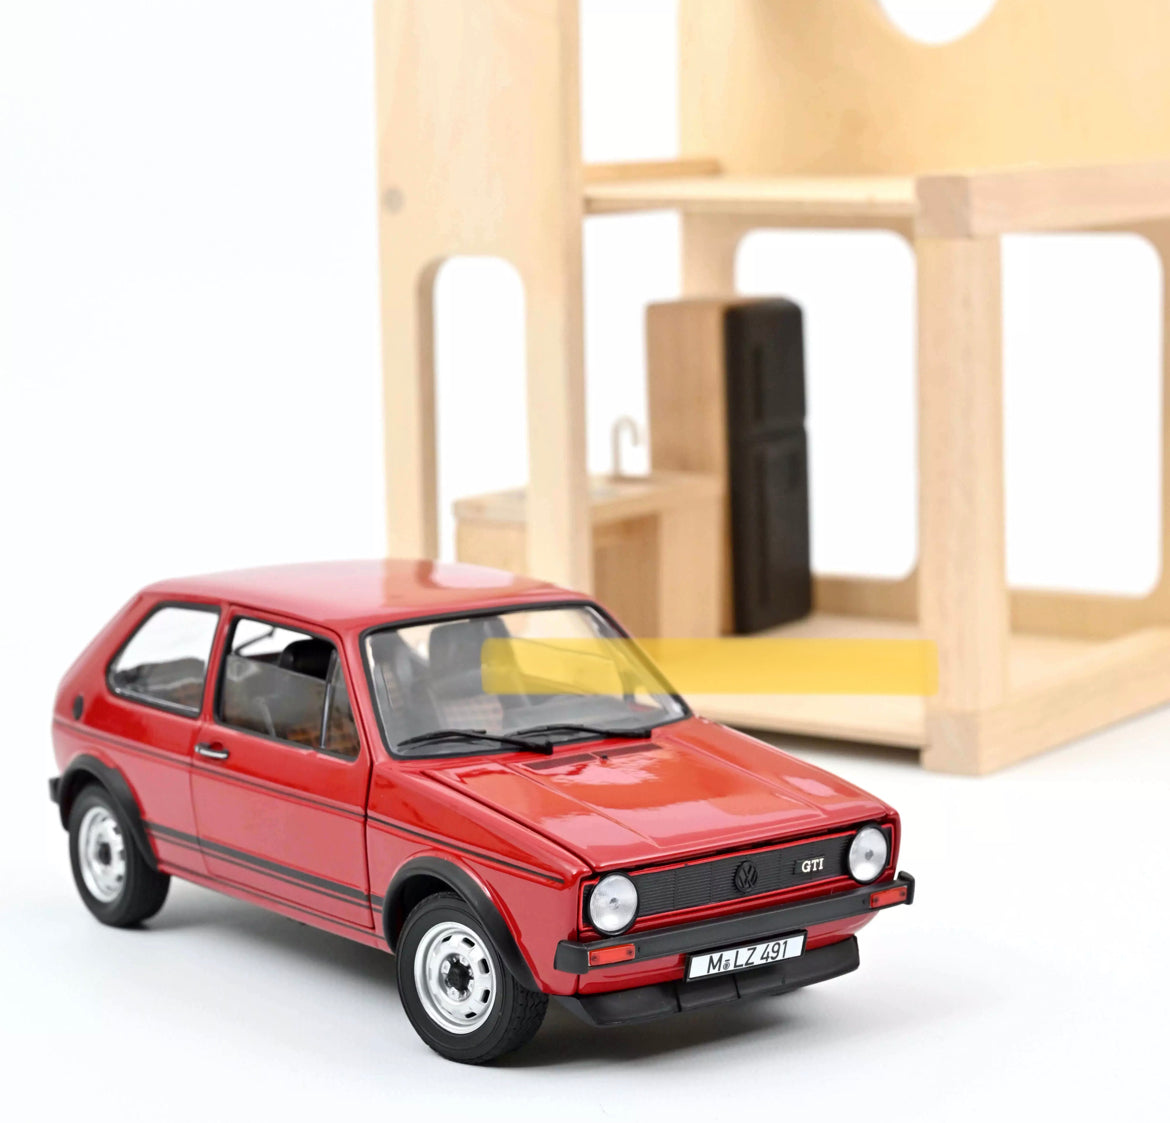 NOREV 1:18 SCALE MODEL CAR VW MK1 GTI